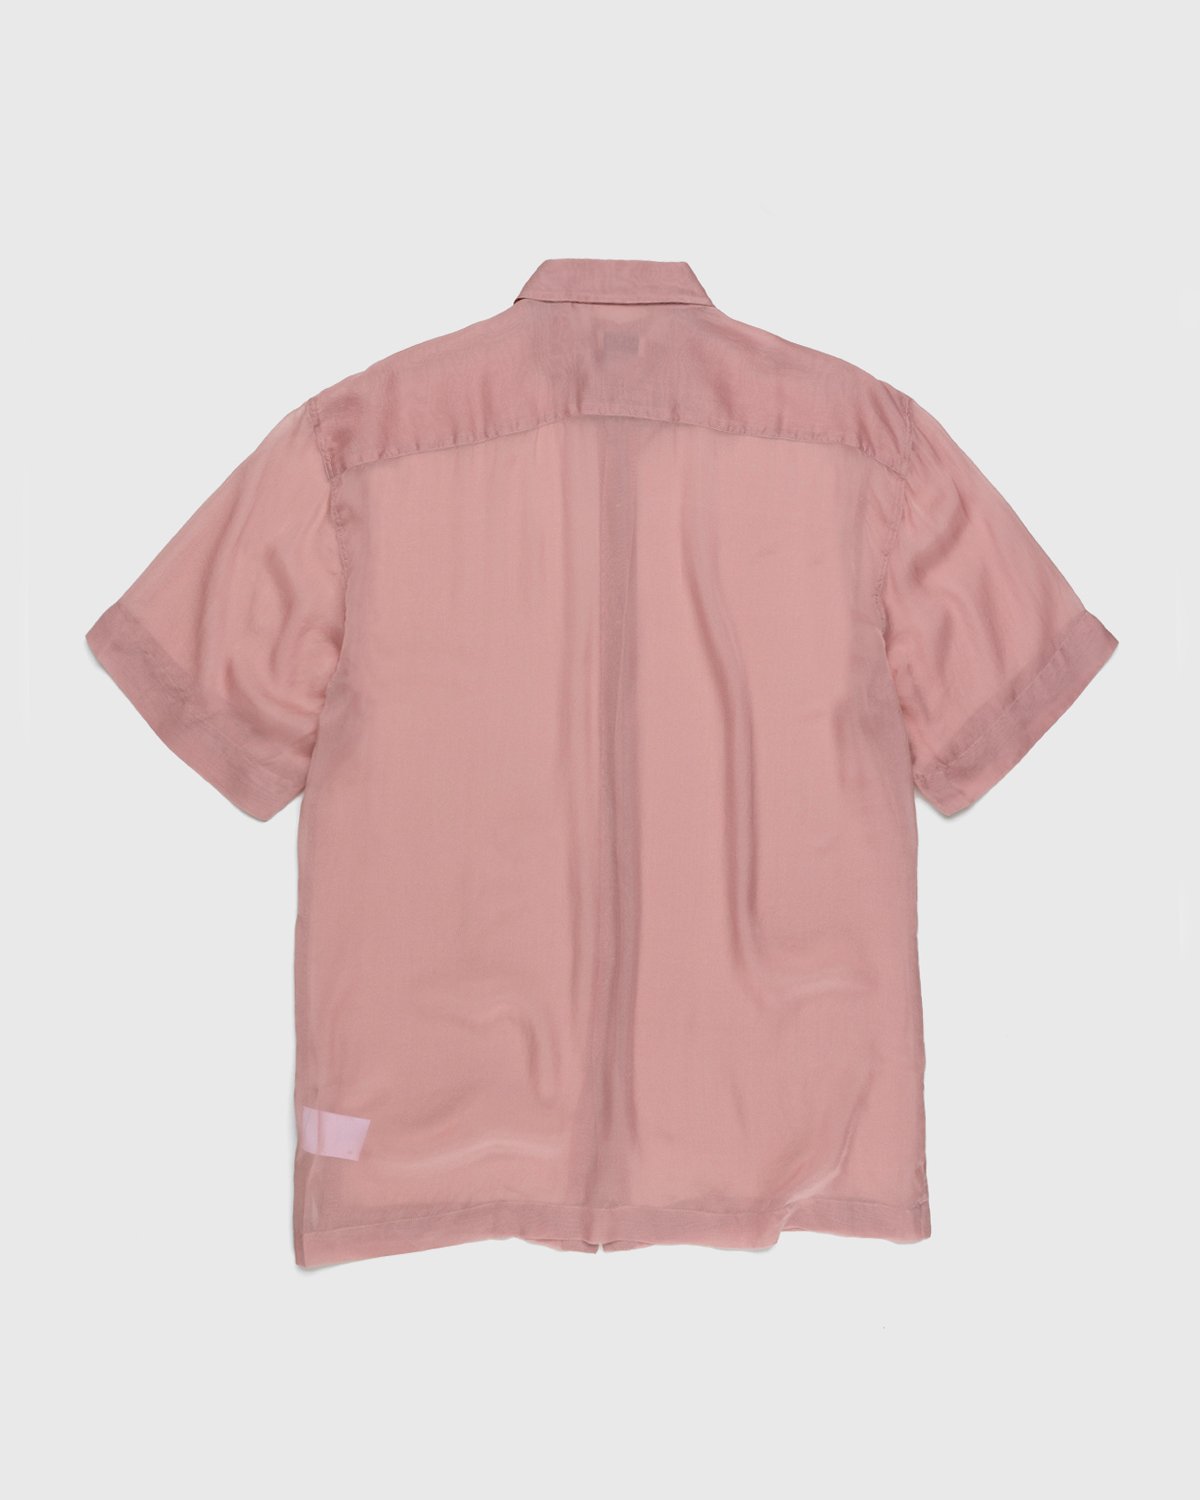 Dries van Noten - Cassidye Shirt Rose - Clothing - Pink - Image 2